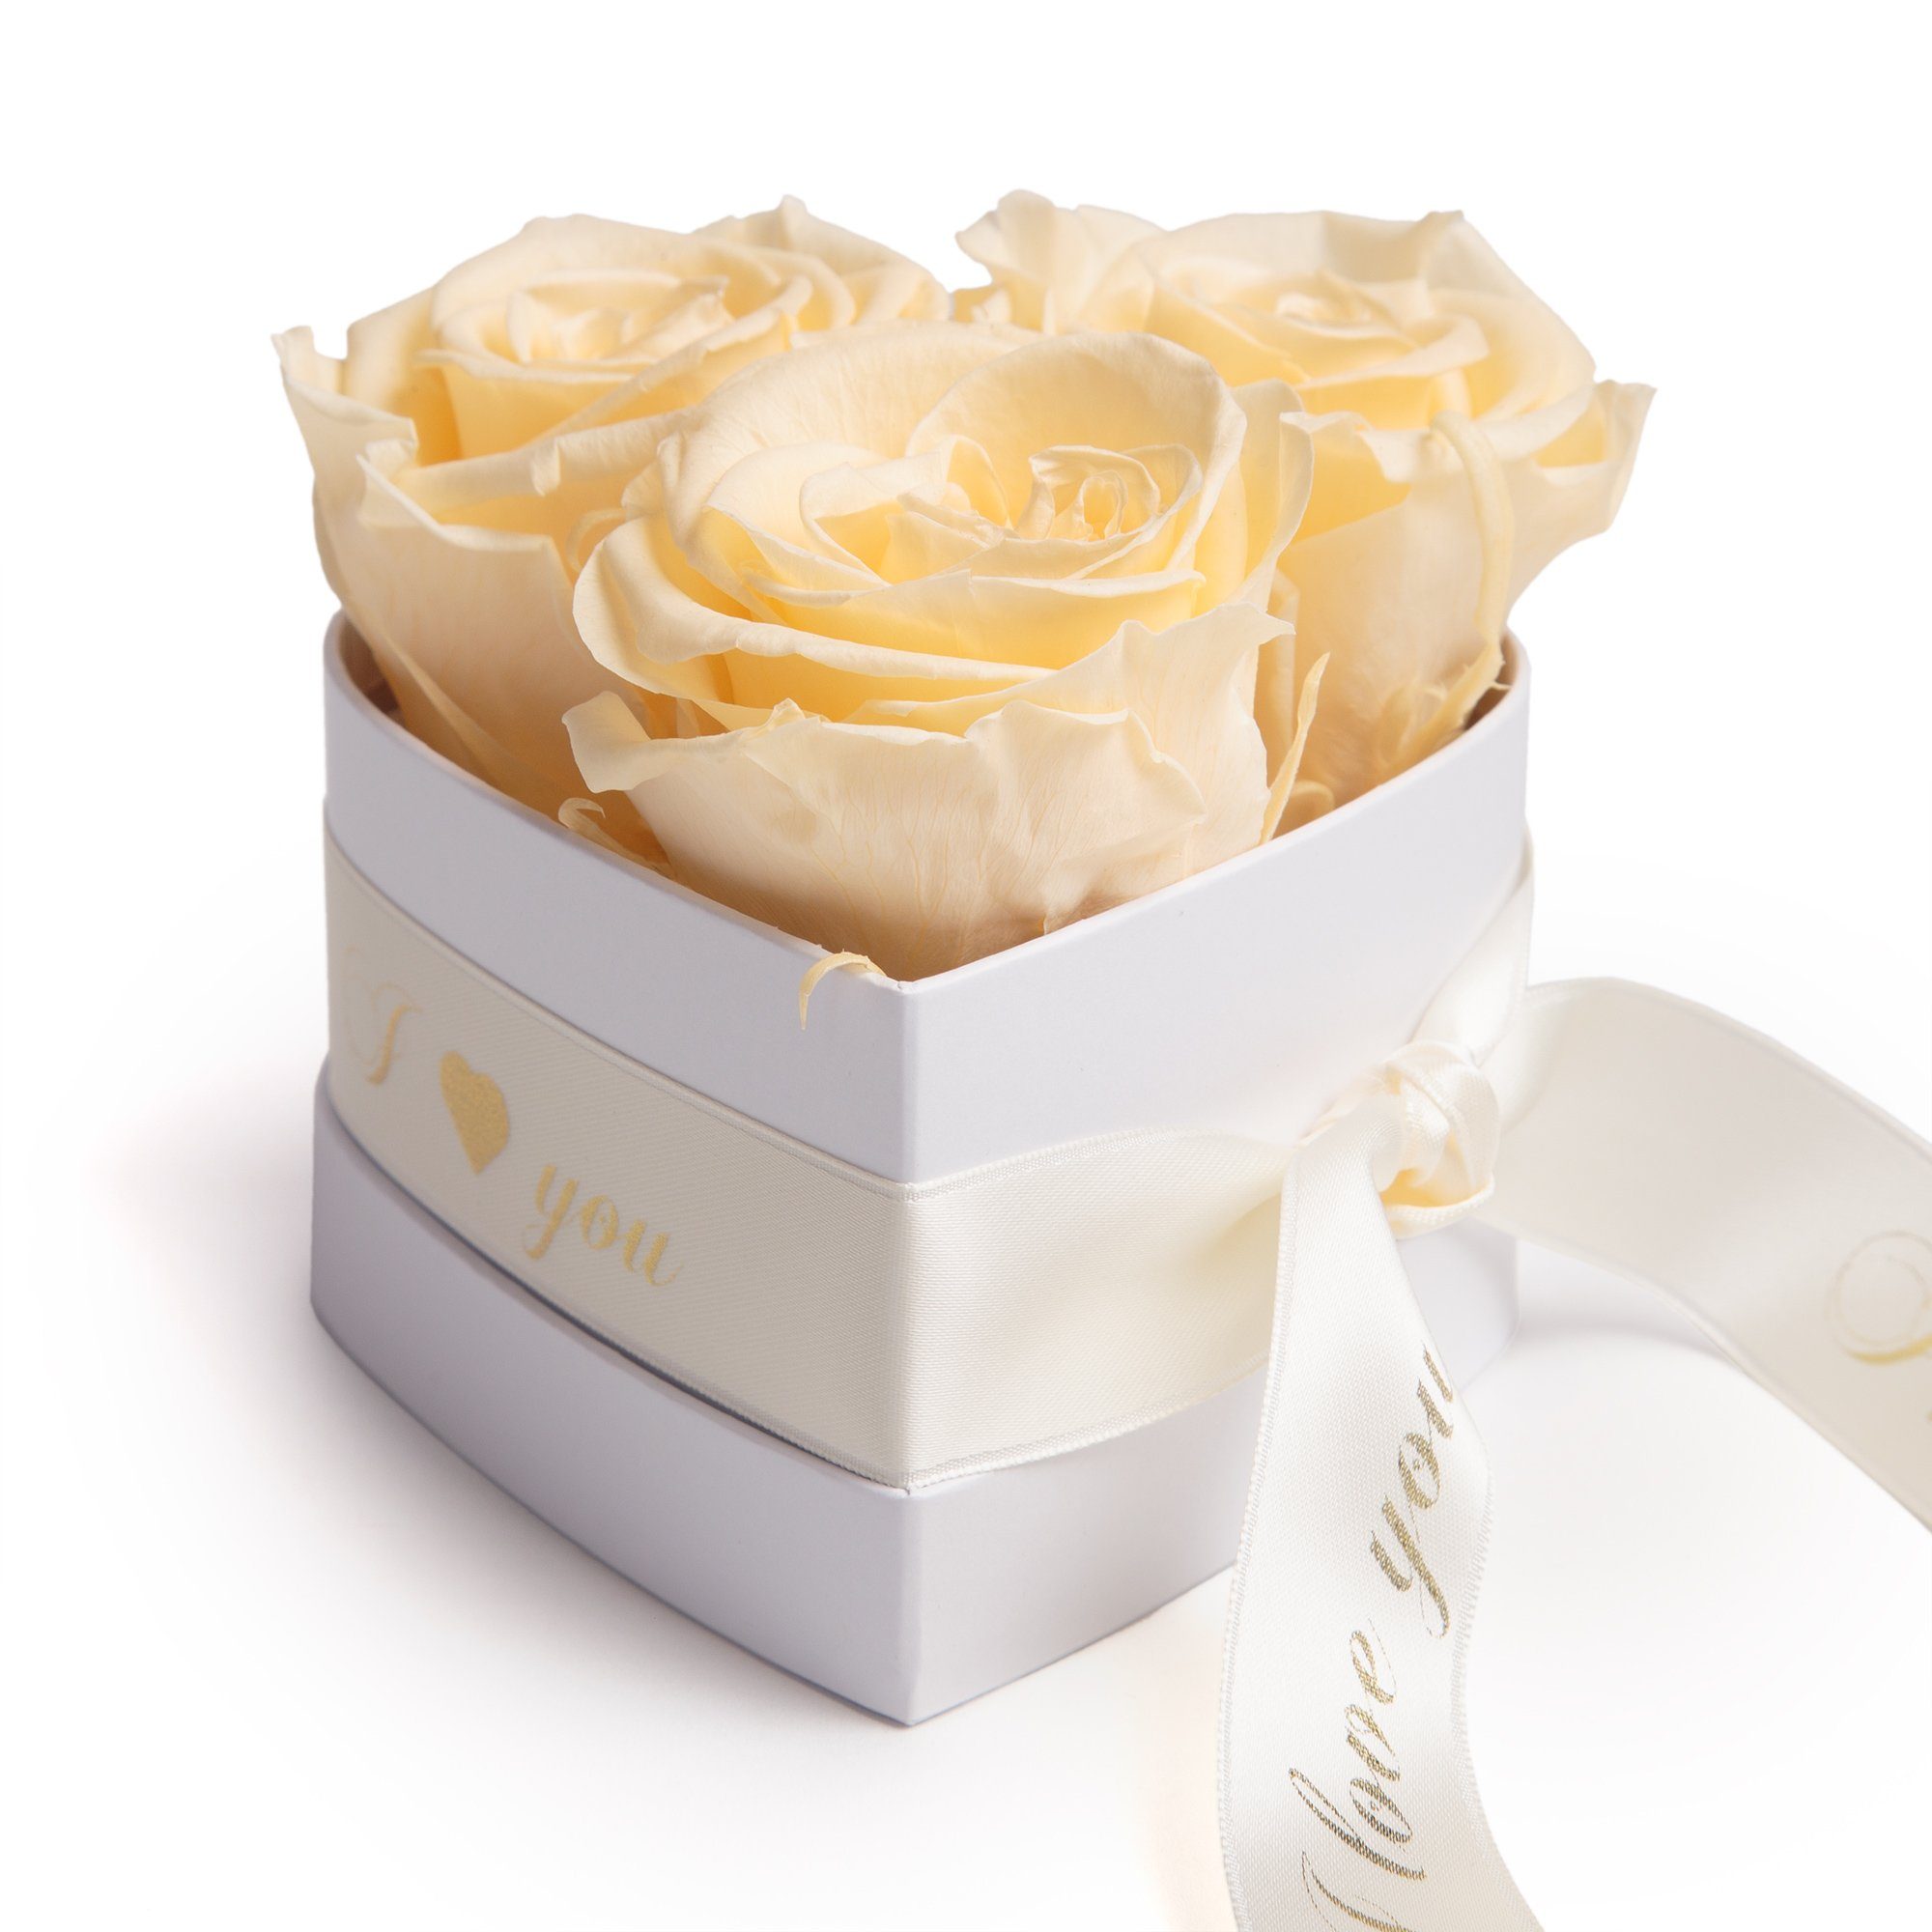 Kunstblume Rosenbox Herz 3 konservierte Infinity Rosen in Box I Love You Rose, ROSEMARIE SCHULZ Heidelberg, Höhe 8.5 cm, Valentinstag Geschenk für Sie